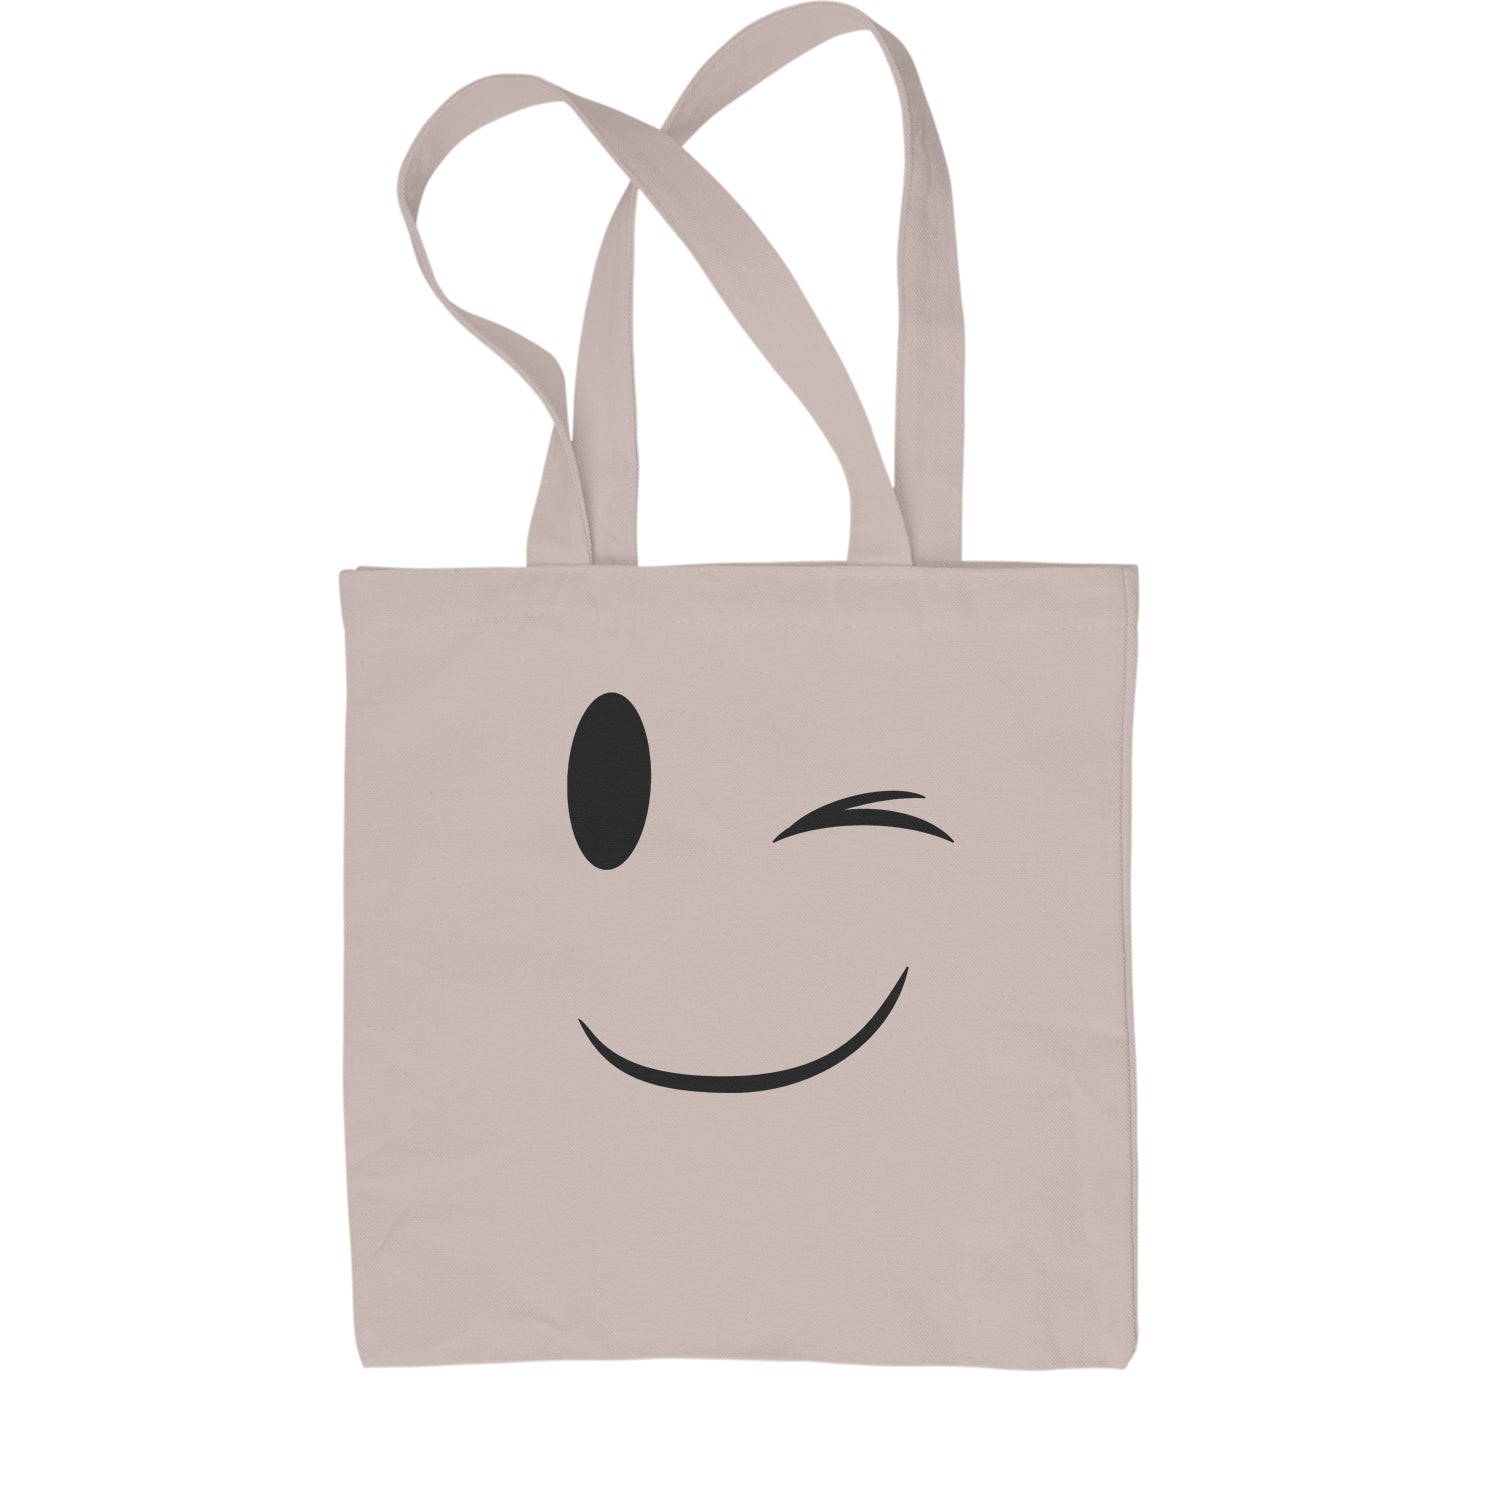 BPCT16SMILEY - Smiley Face Shopping Bags, White